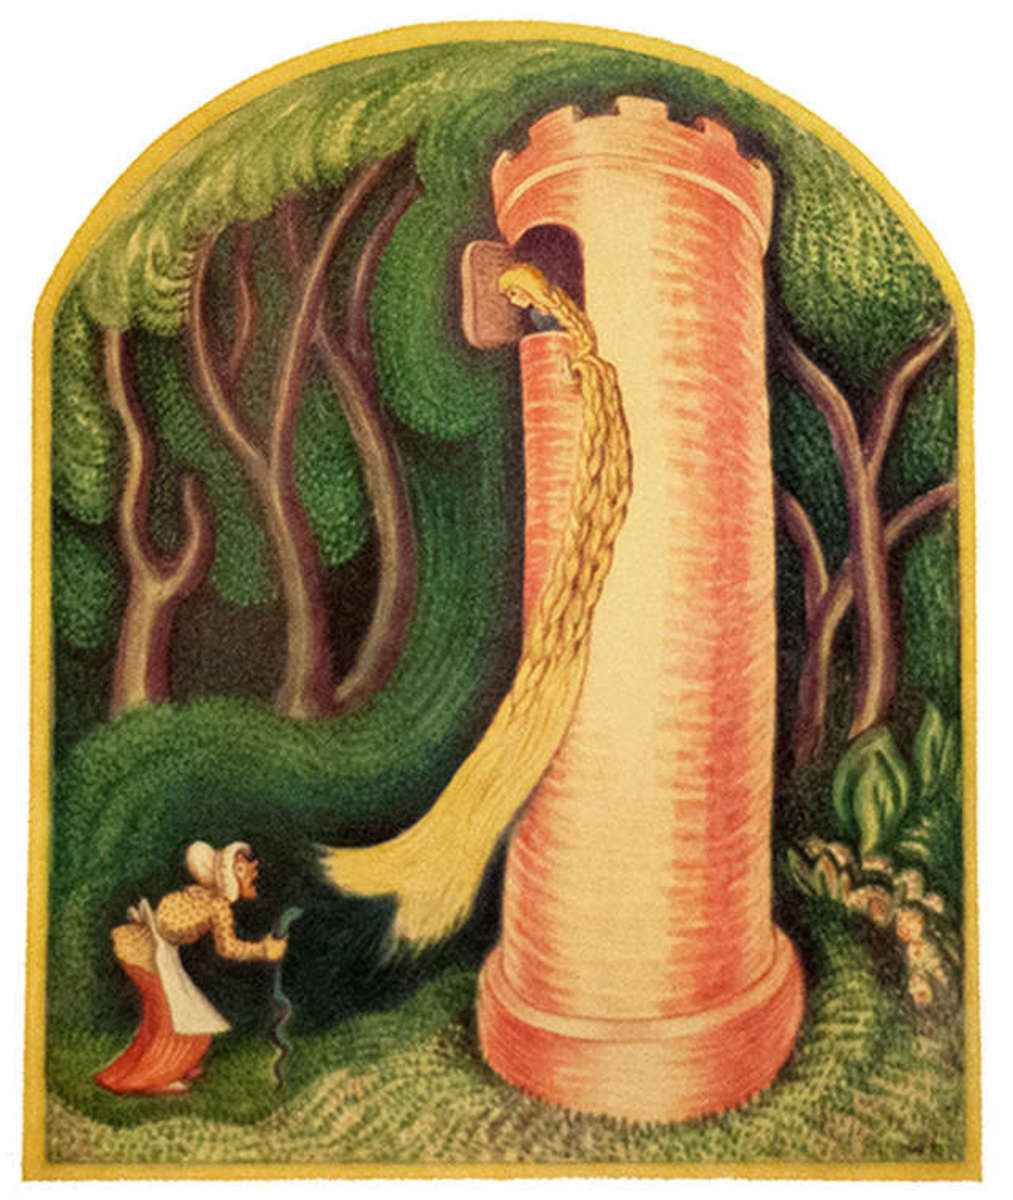 Rapunzel, illustrated by Wanda Gag